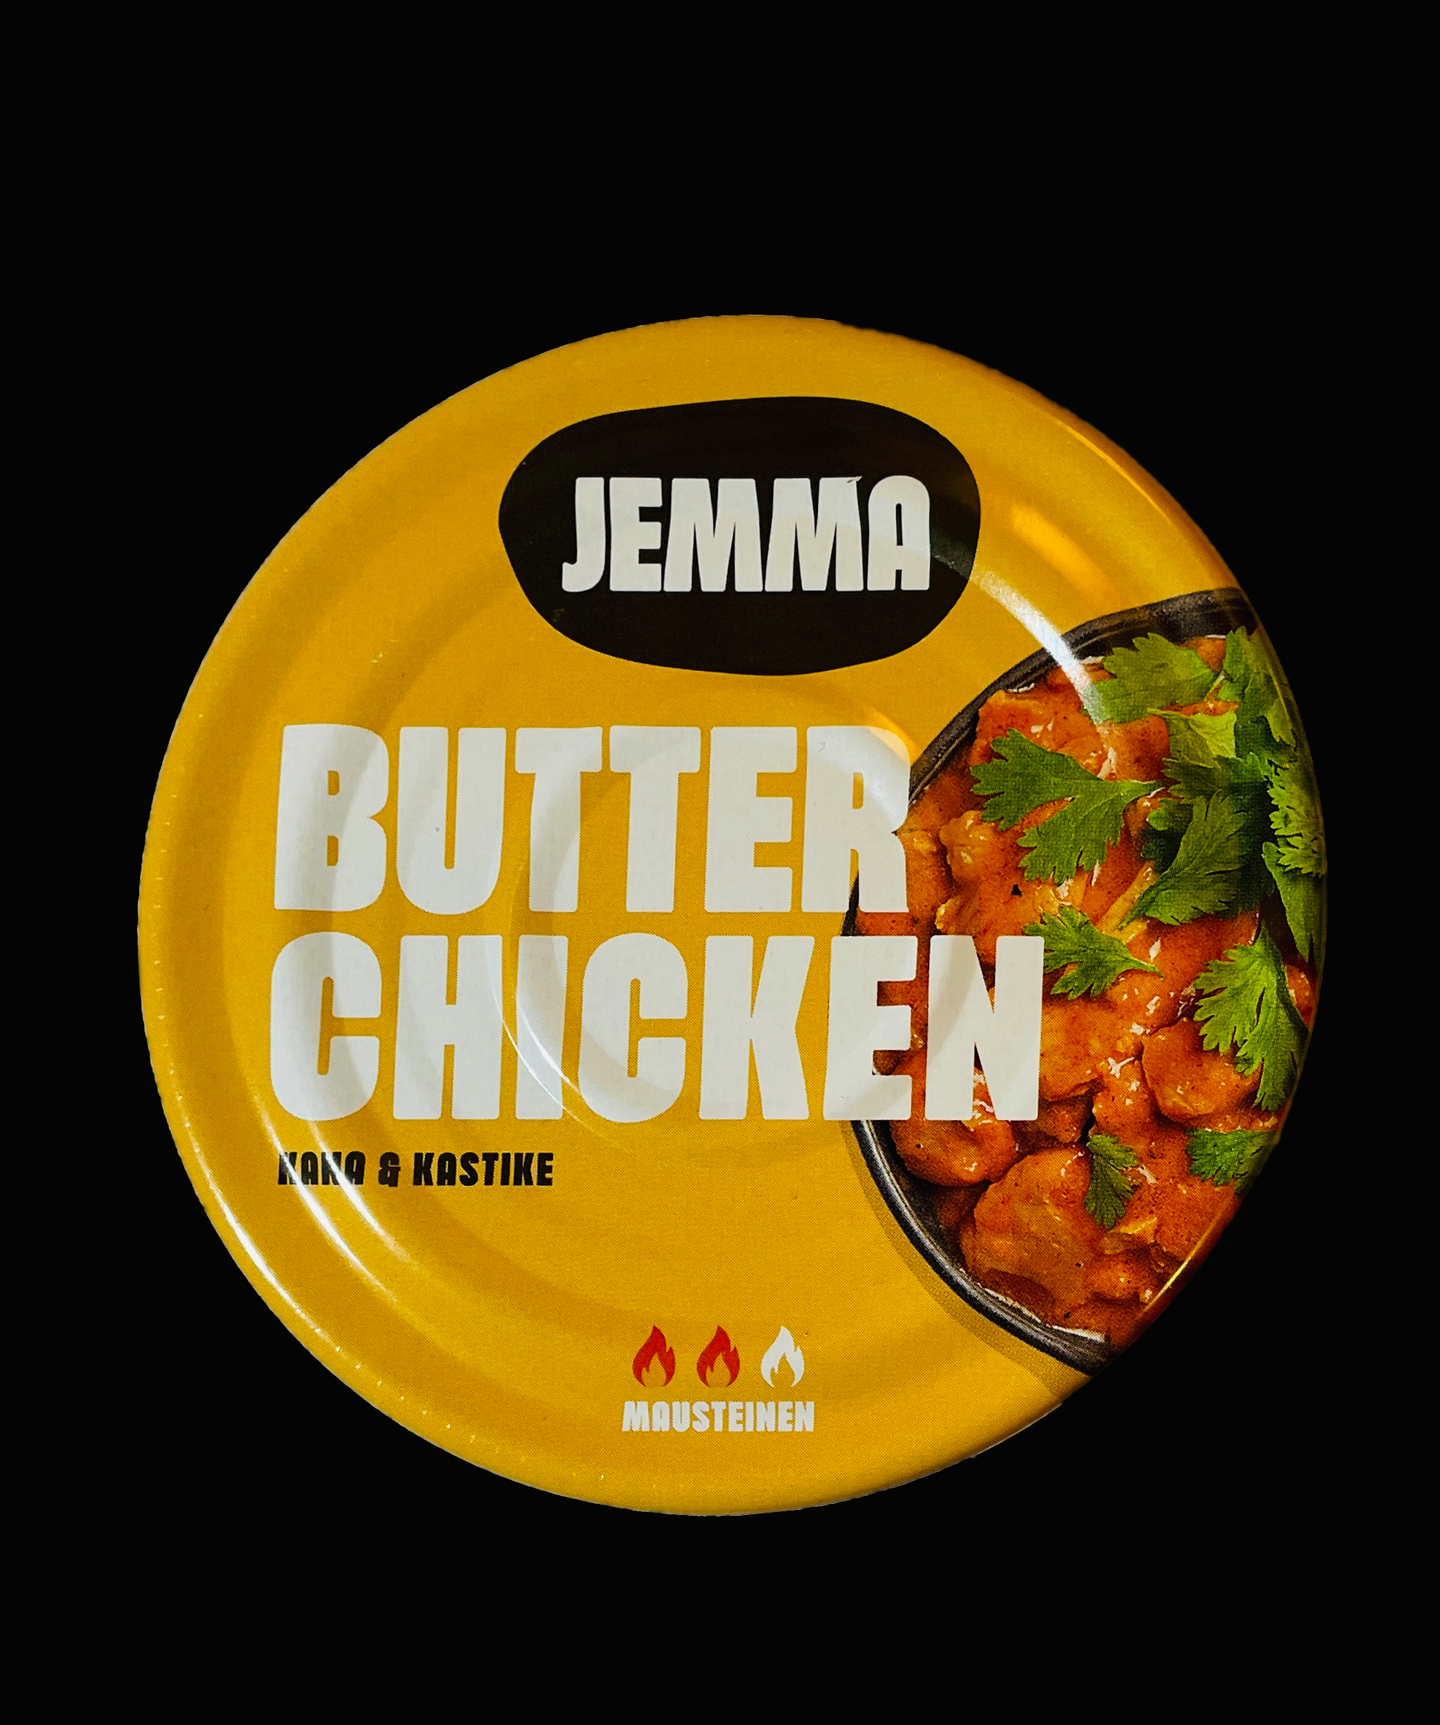 Jemma Butter Chicken kanalastuja kastikkeessa 210g